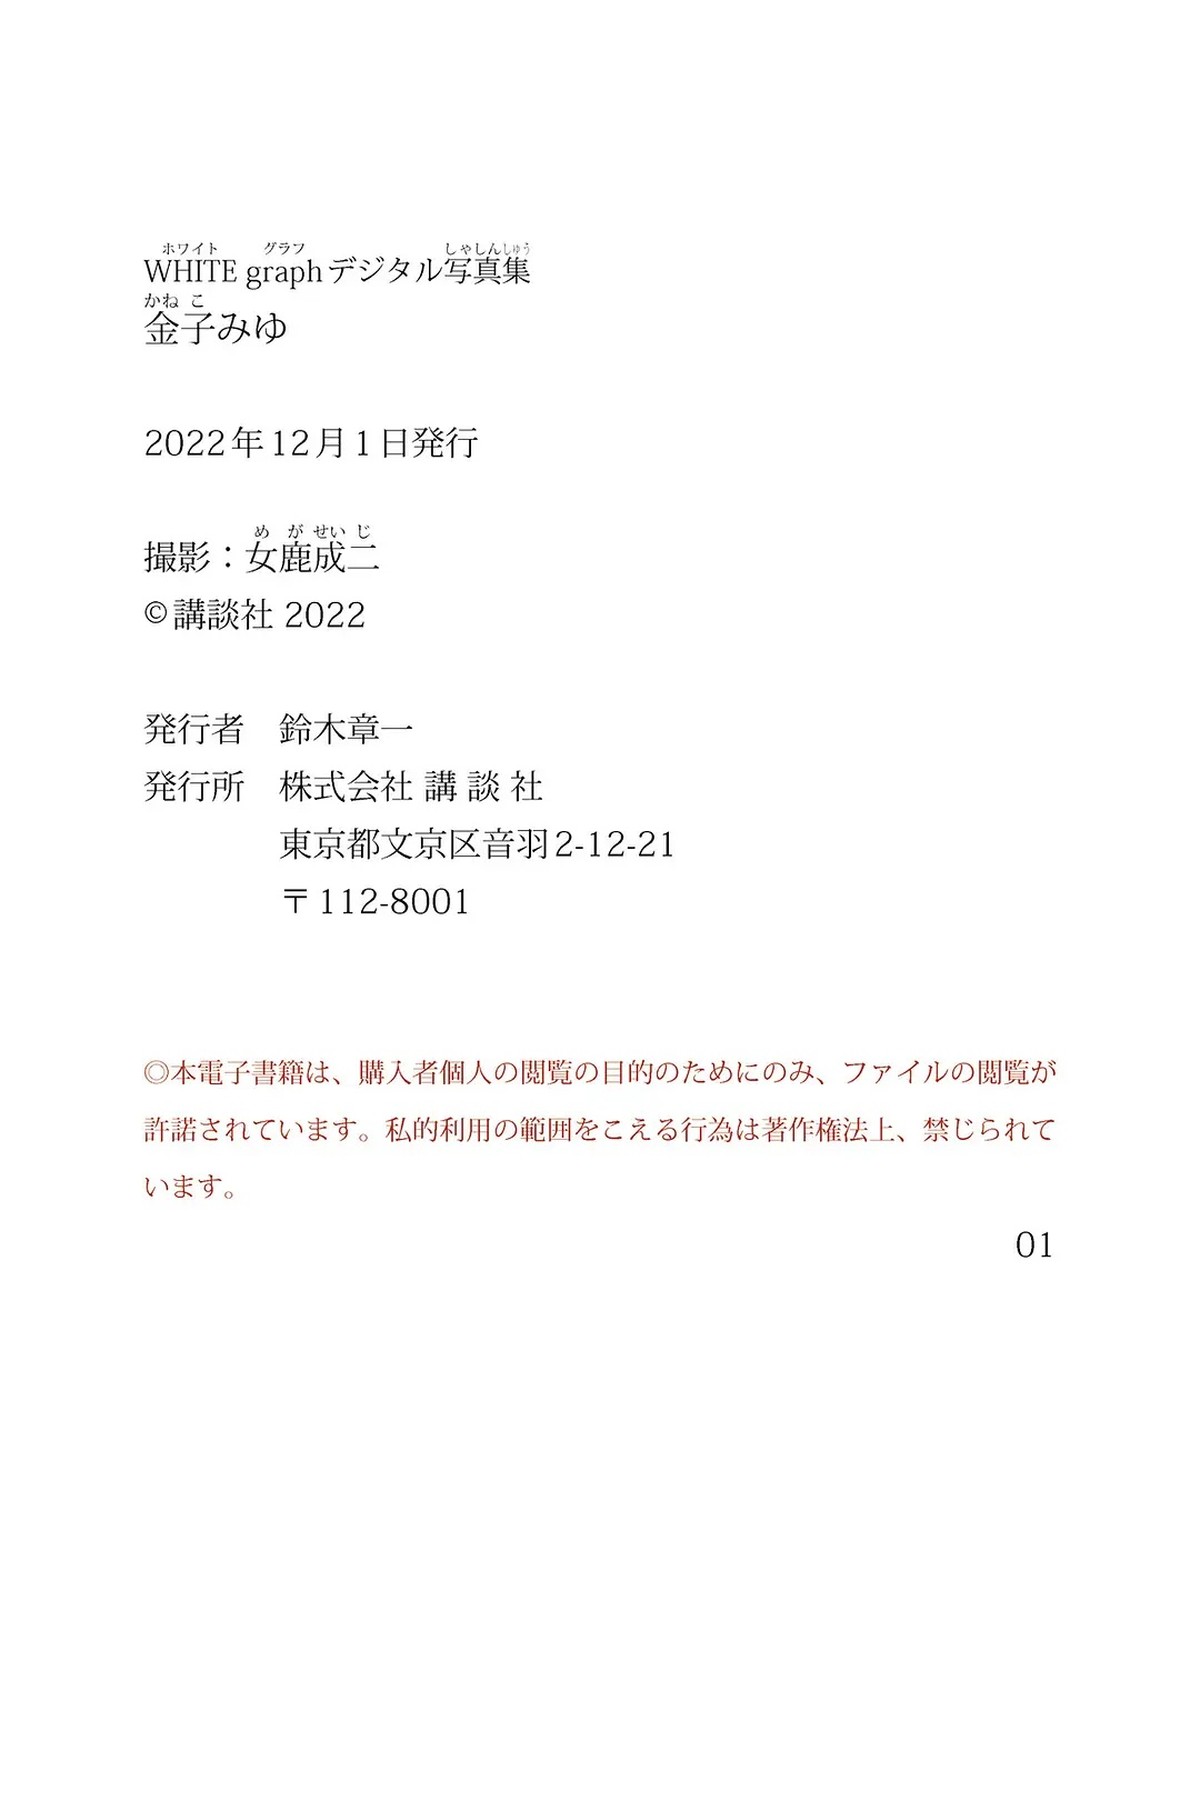 Digital Photobook 2022 11 22 Miyu Kaneko 金子みゆ White Graph 0055 7218032184.jpg